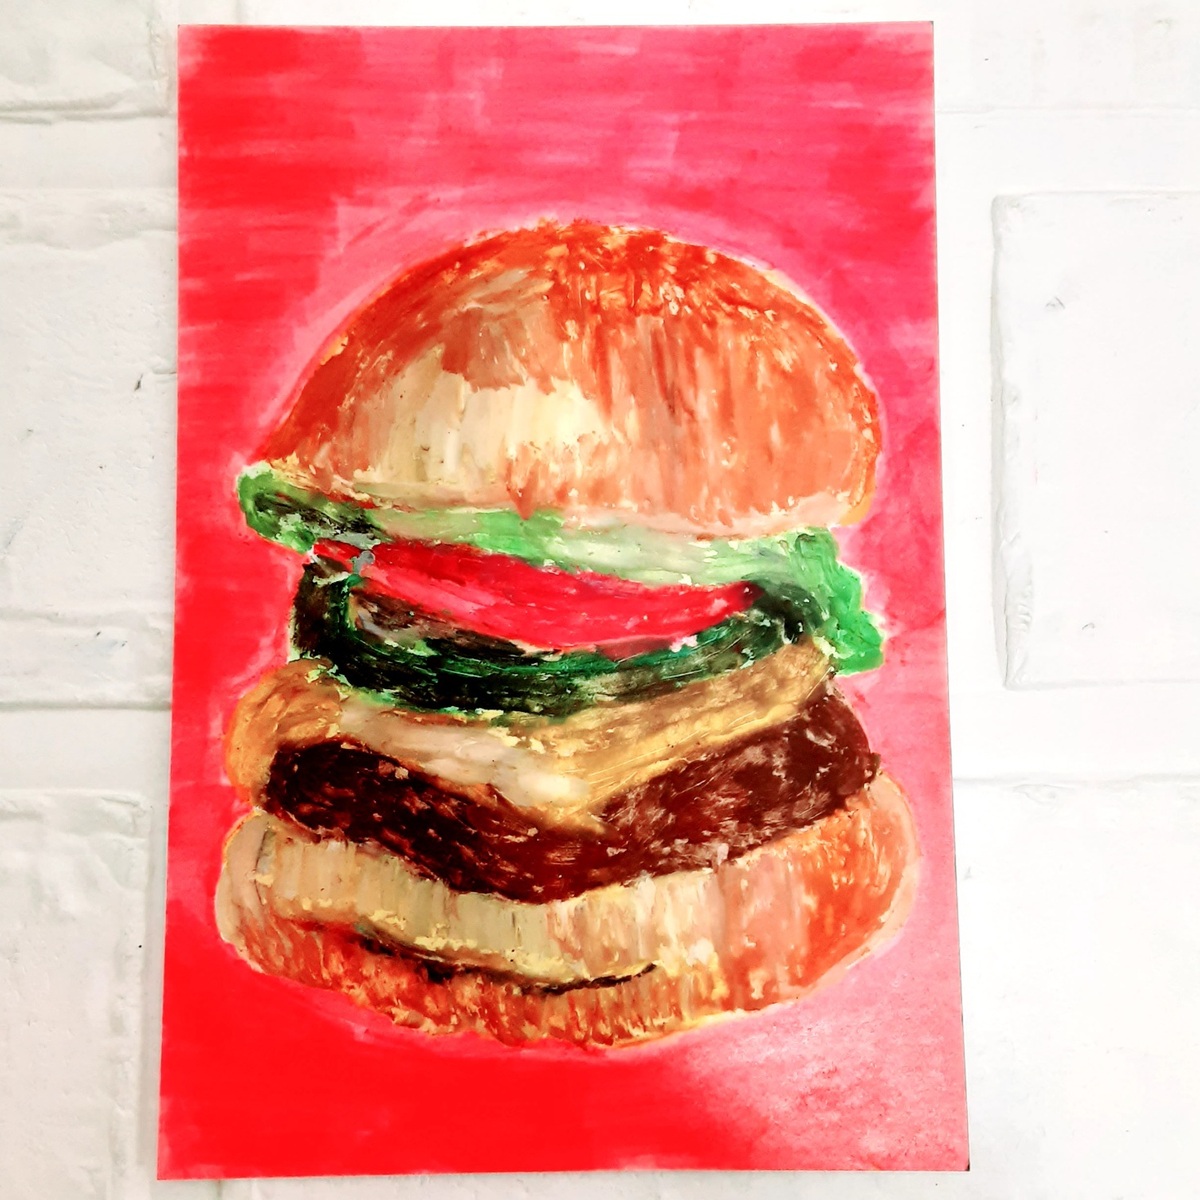 ハガキサイズに描くハンバーガー。